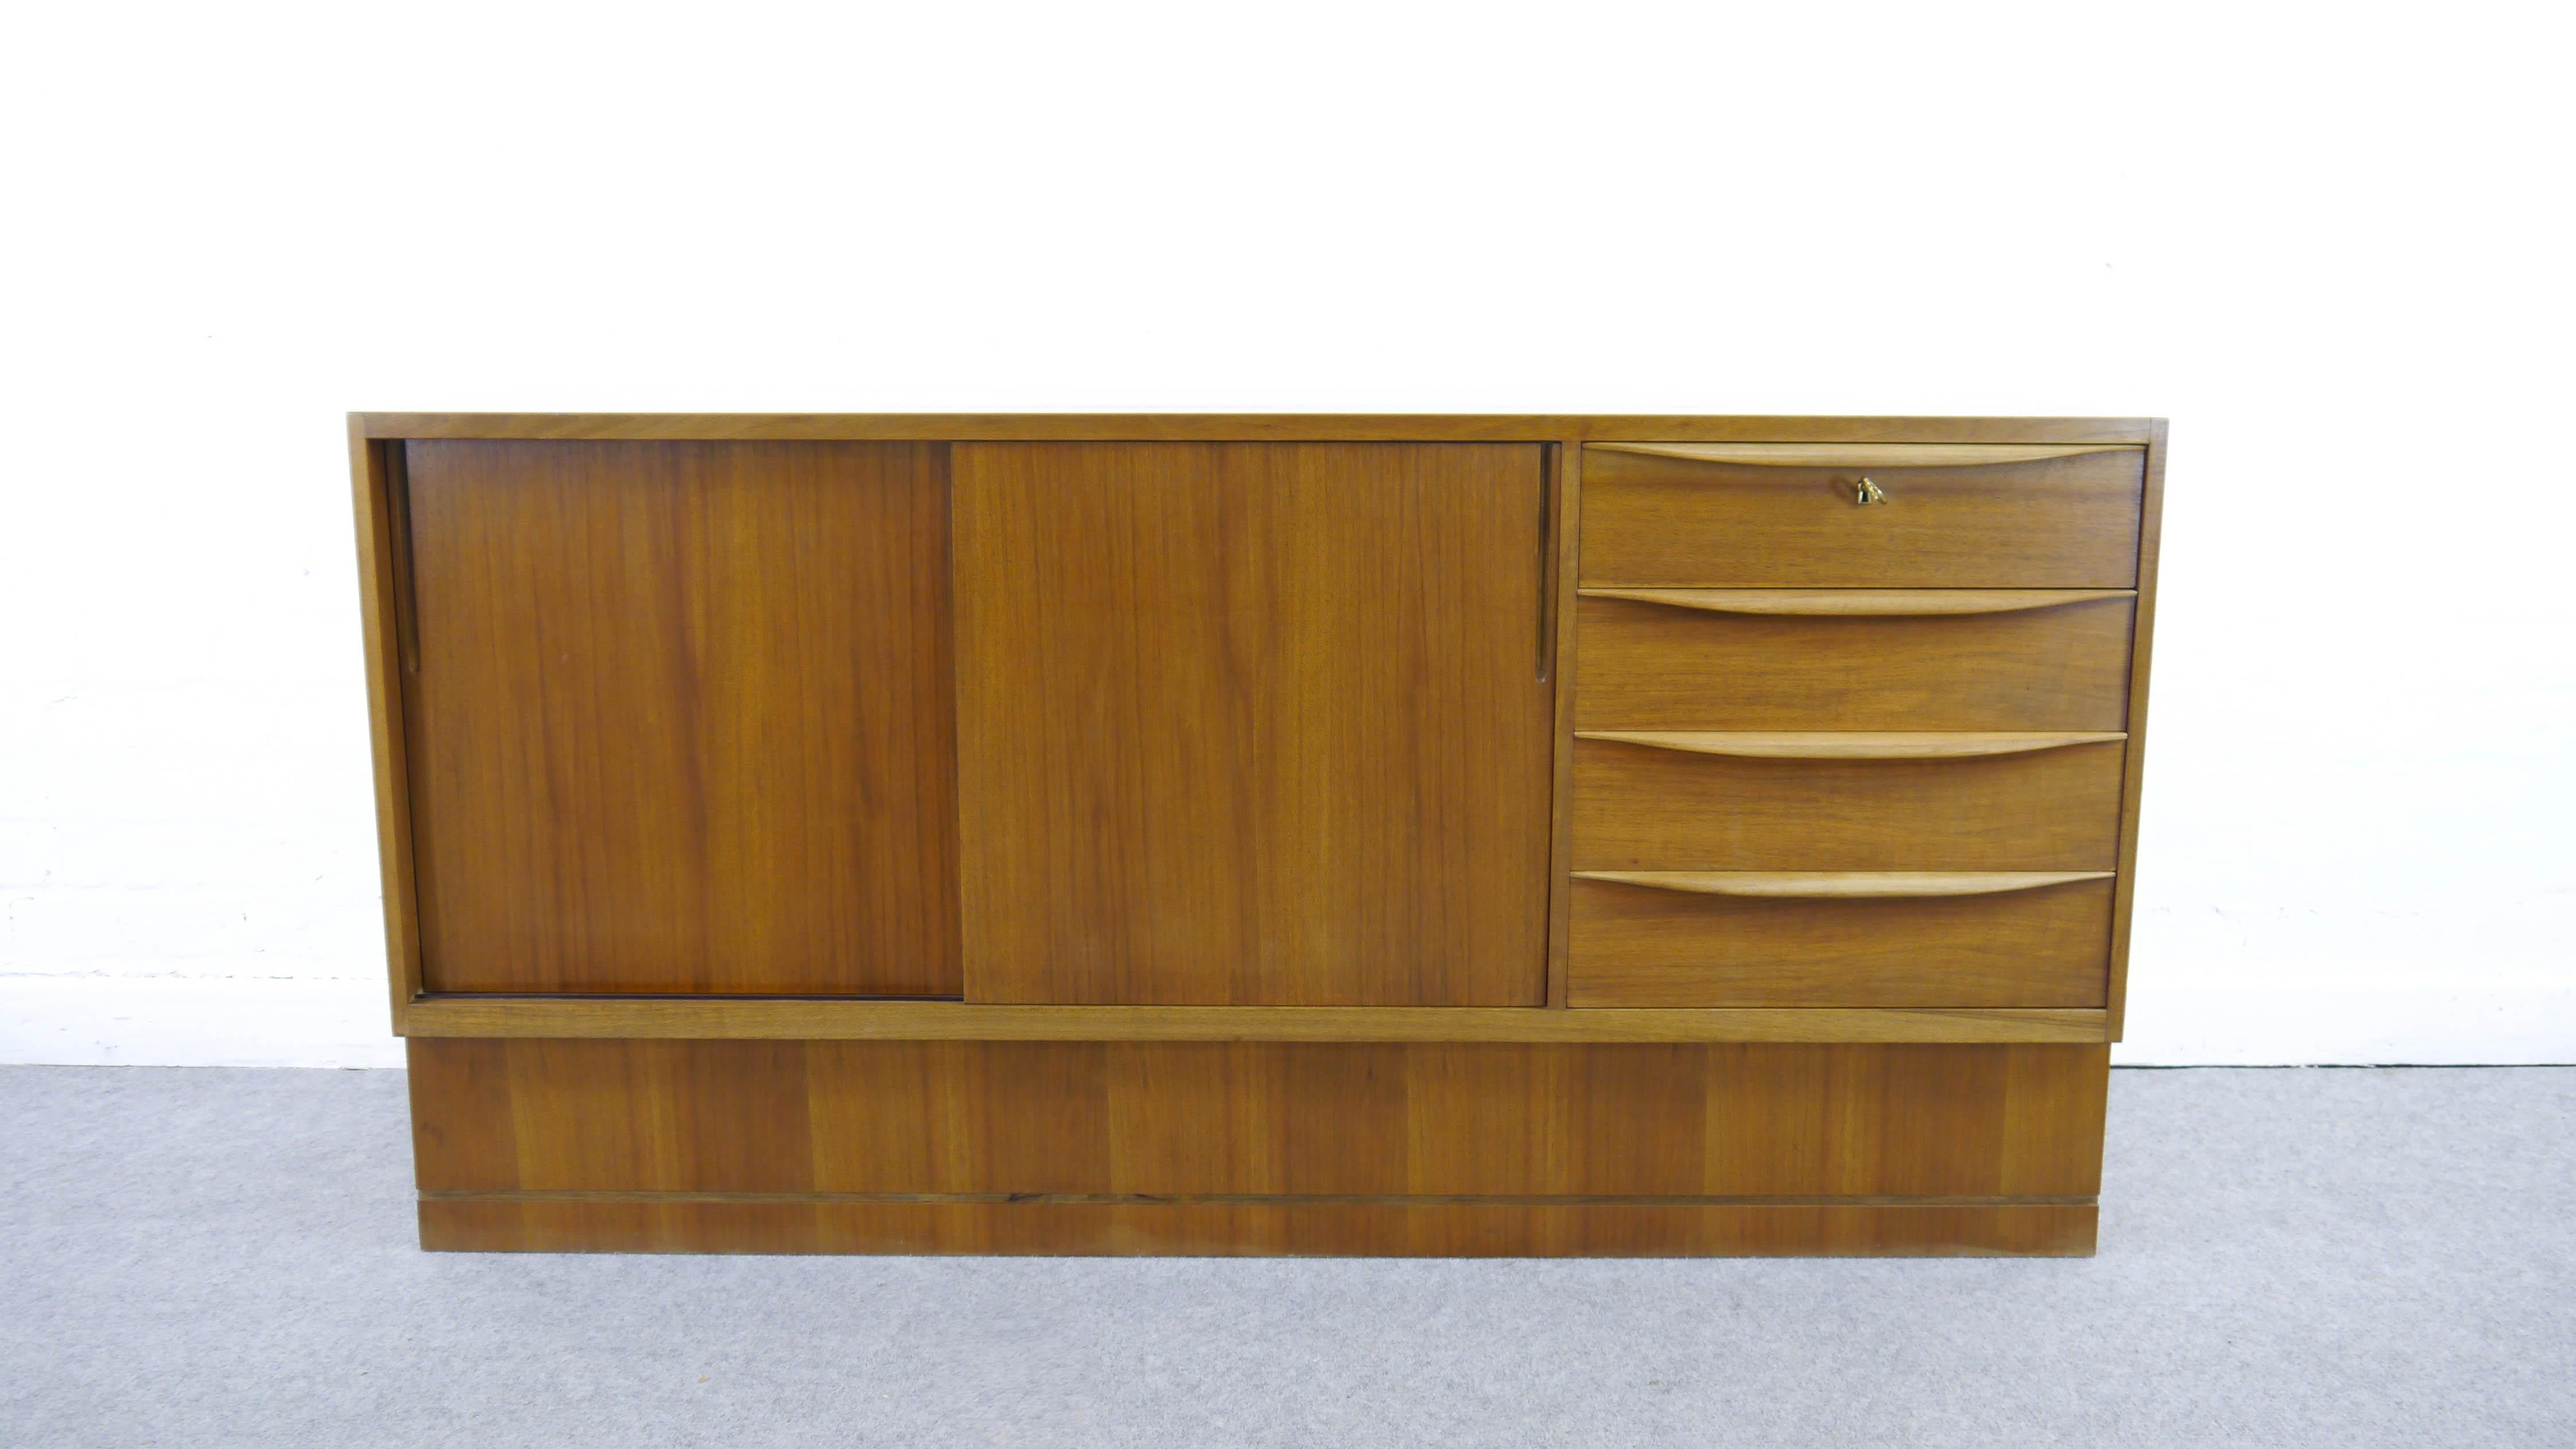 Franz Ehrlich, élève du Bauhaus, a conçu cette série de meubles au début des années 50 pour le VEB Deutsche Werkstätten Hellerau. Buffet du milieu du siècle avec deux portes coulissantes et 4 tiroirs.